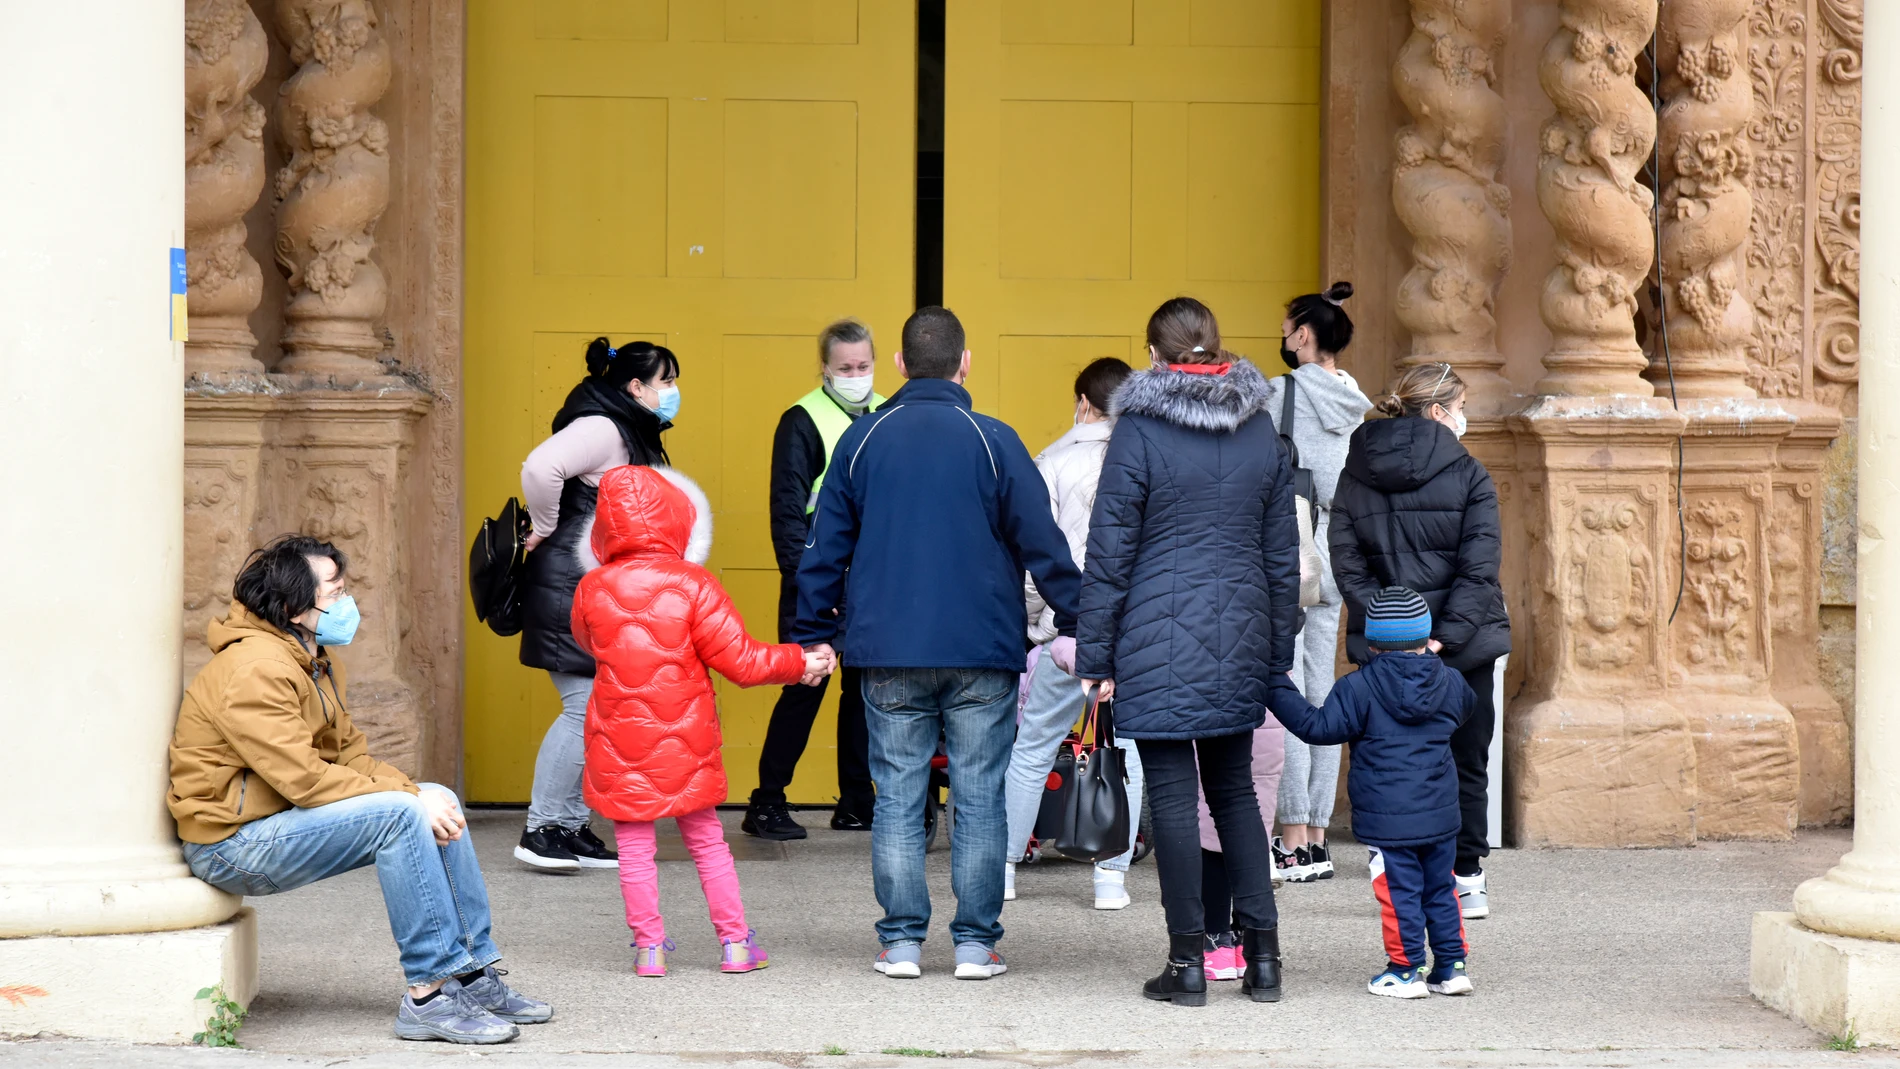 Varias personas refugiadas entran en el palacio de Victoria Eugenia, en la Feria de Barcelona, convertido en centro de recepción y atención de refugiados de Ucrania, en Cataluña (España).